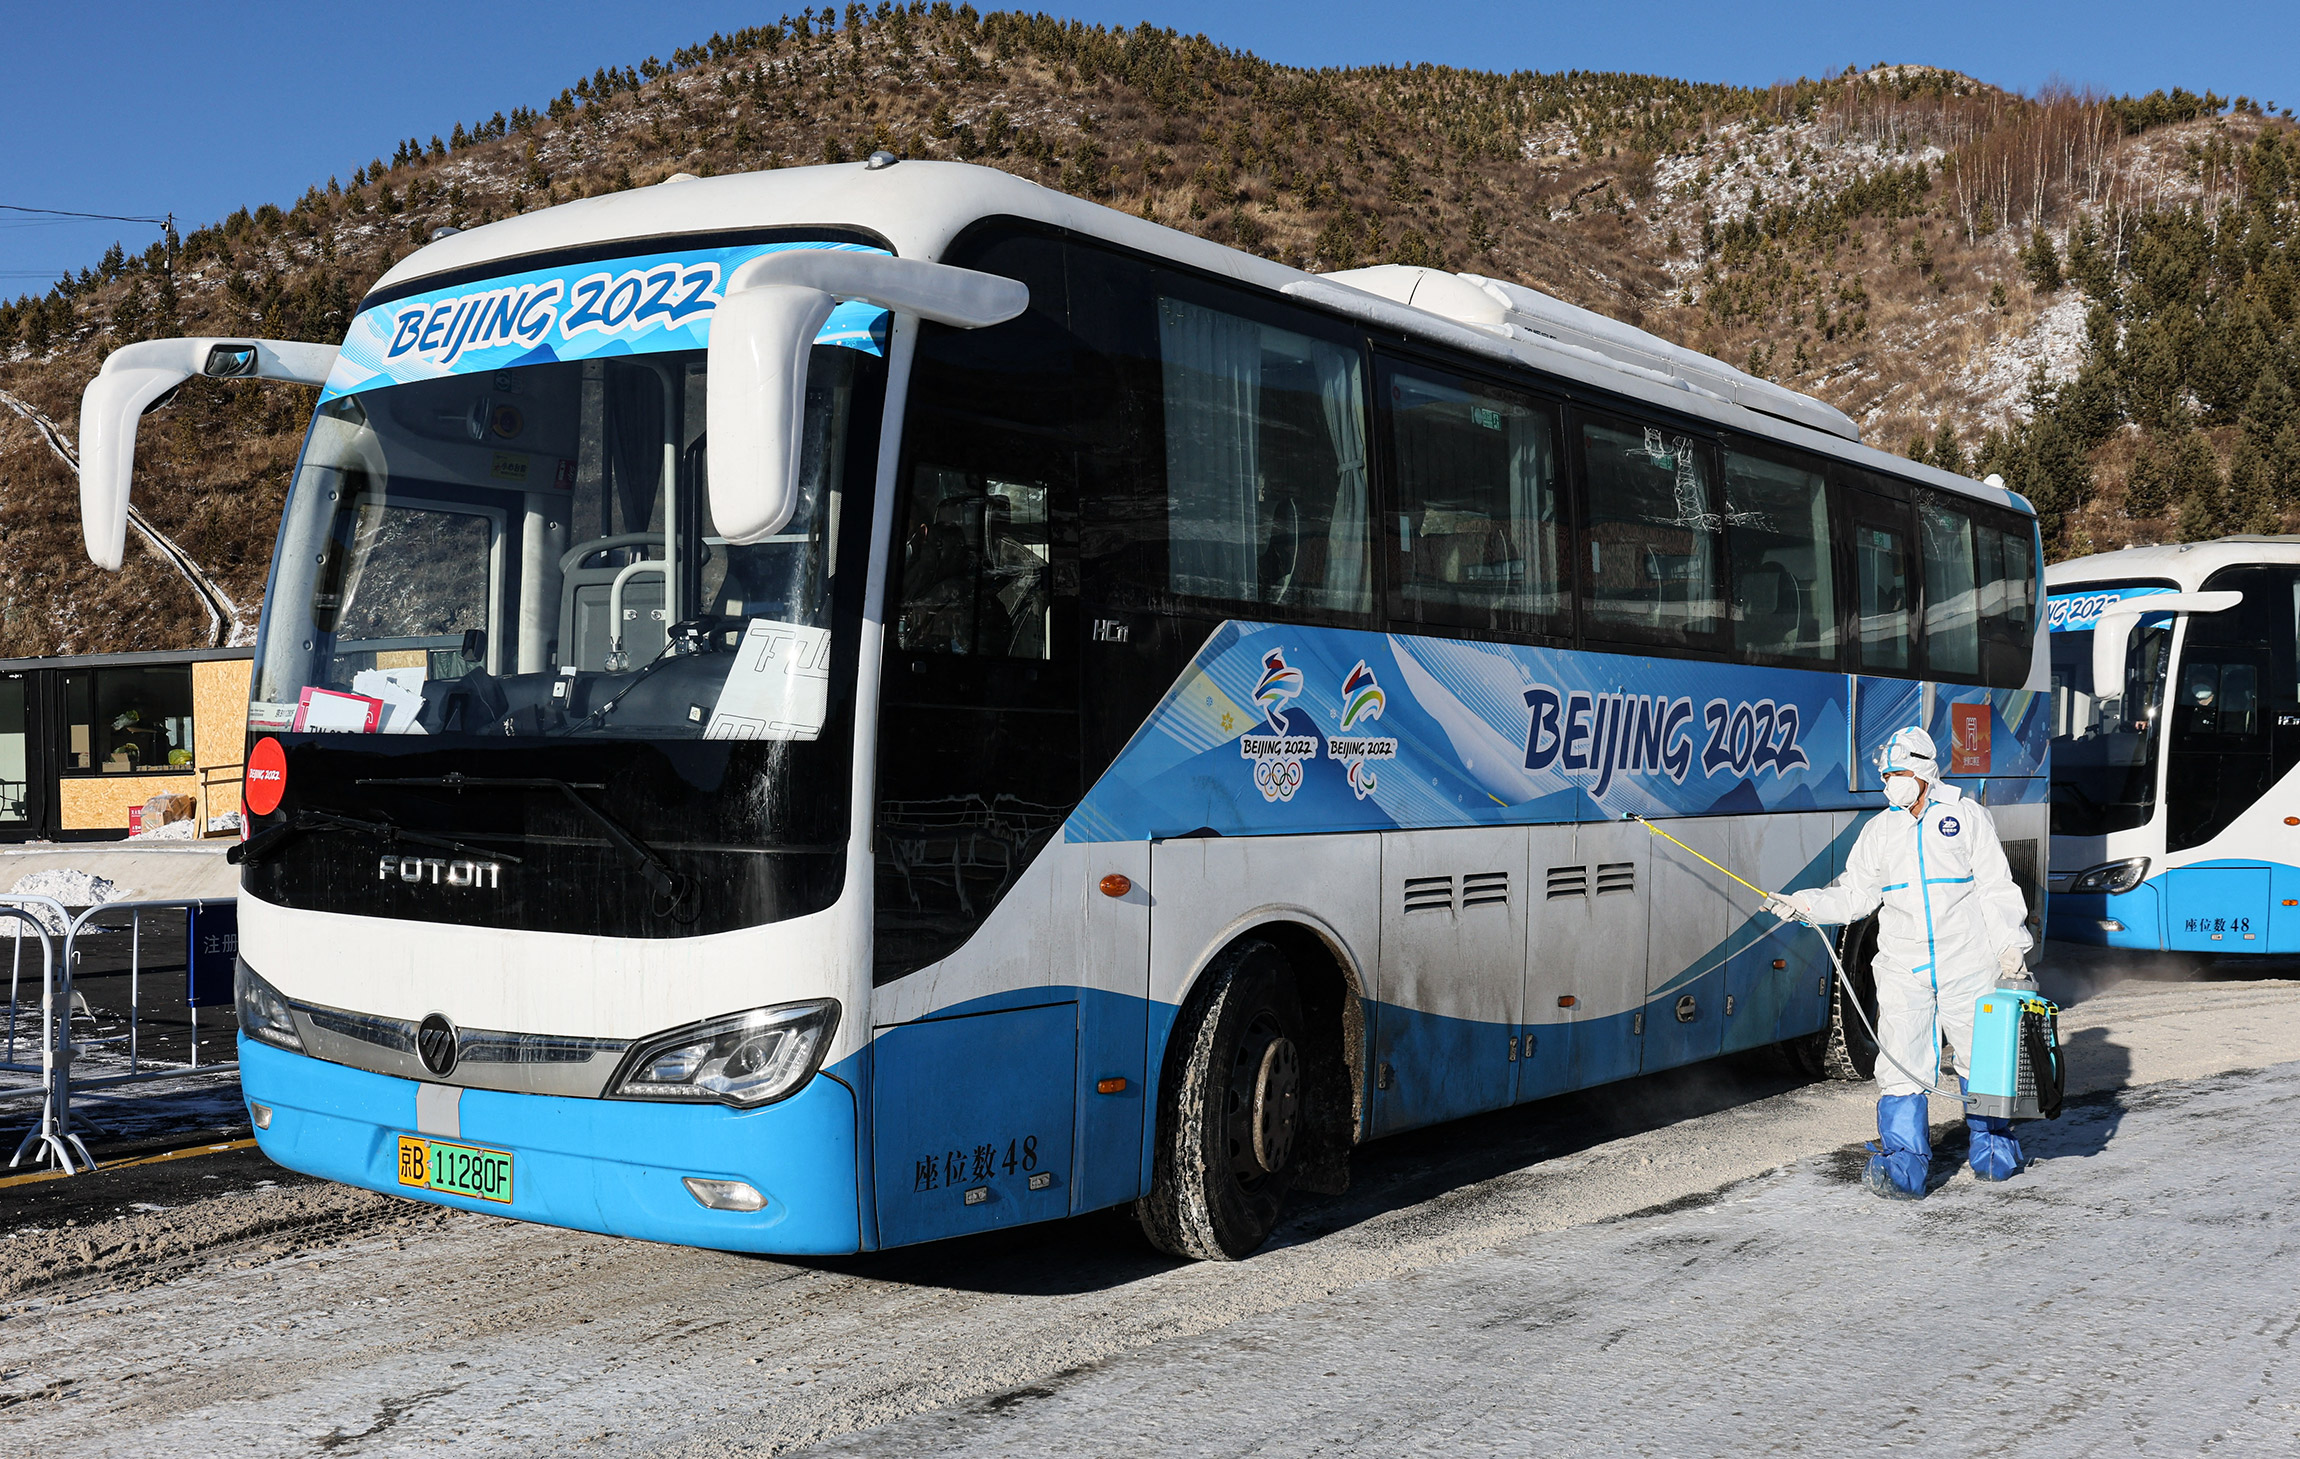 Перемещаться между отелями и олимпийскими объектами можно на специализированных автобусах по выделенной олимпийской полосе

